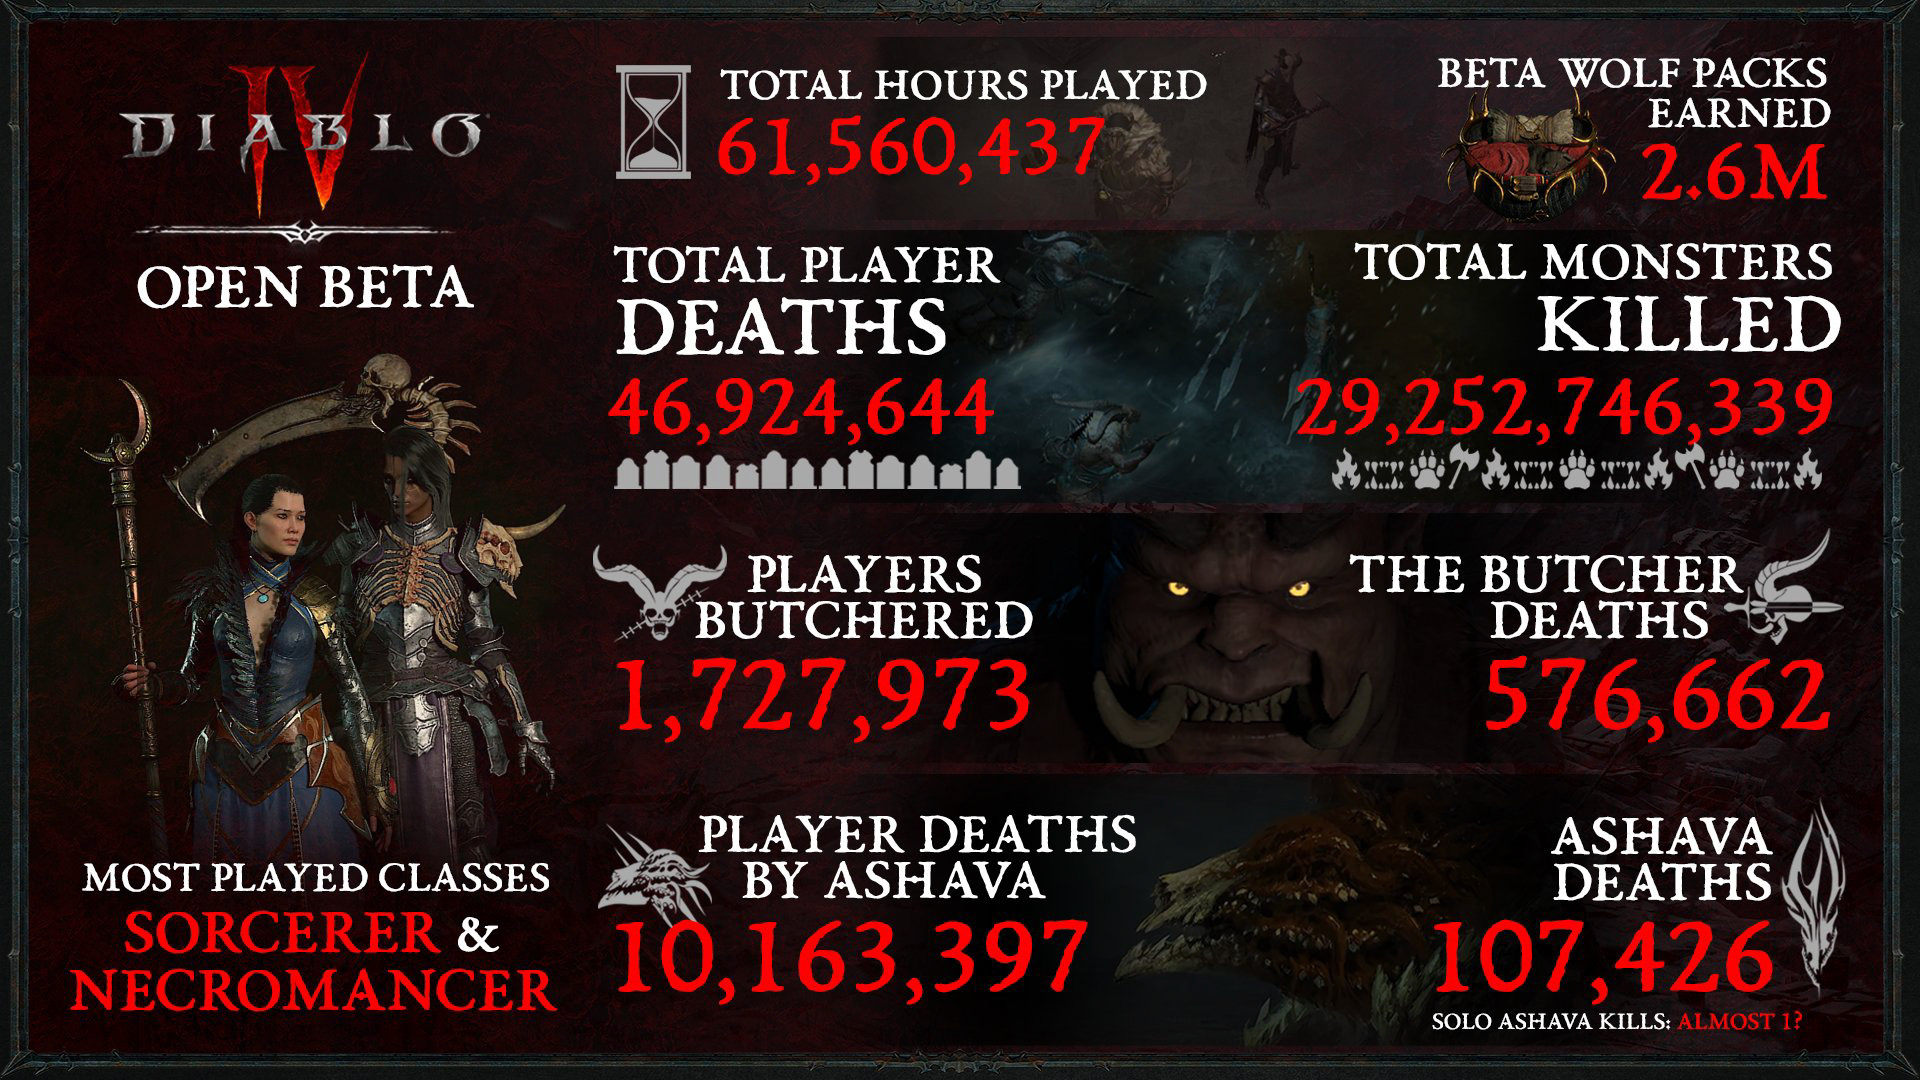 Diablo IV Open Beta Infographic